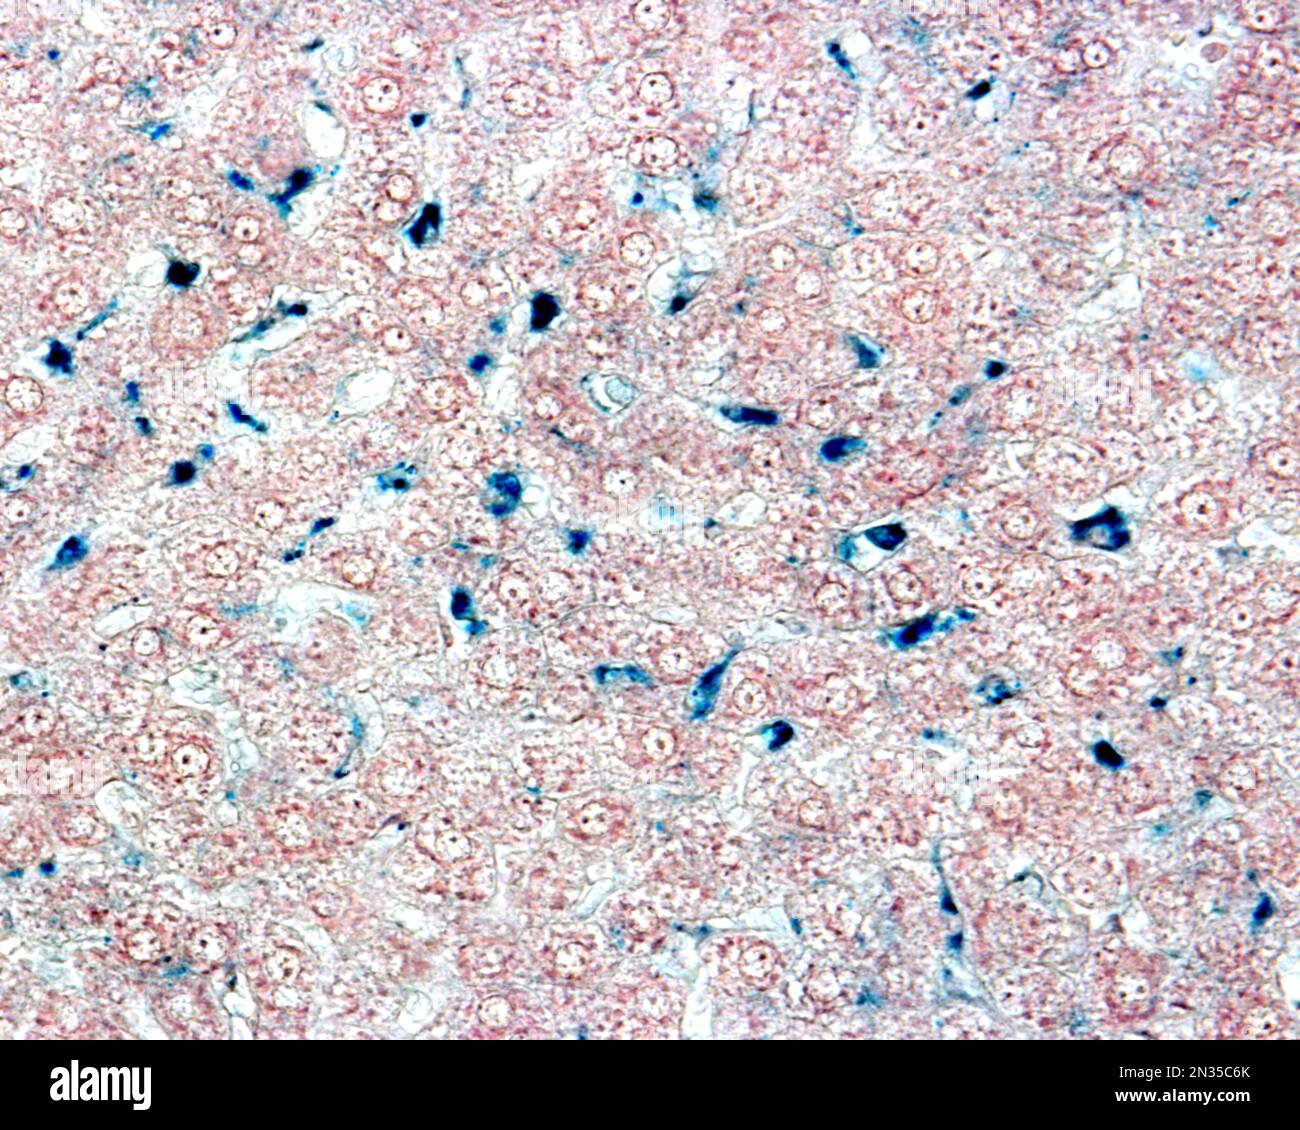 Le cellule epatiche di Kupffer sono macrofagi correlati alle sinusoidi epatiche. Quando le cellule di Kupffer fagocitano il blu di Trypan circolante, una macchia vitale che può b Foto Stock